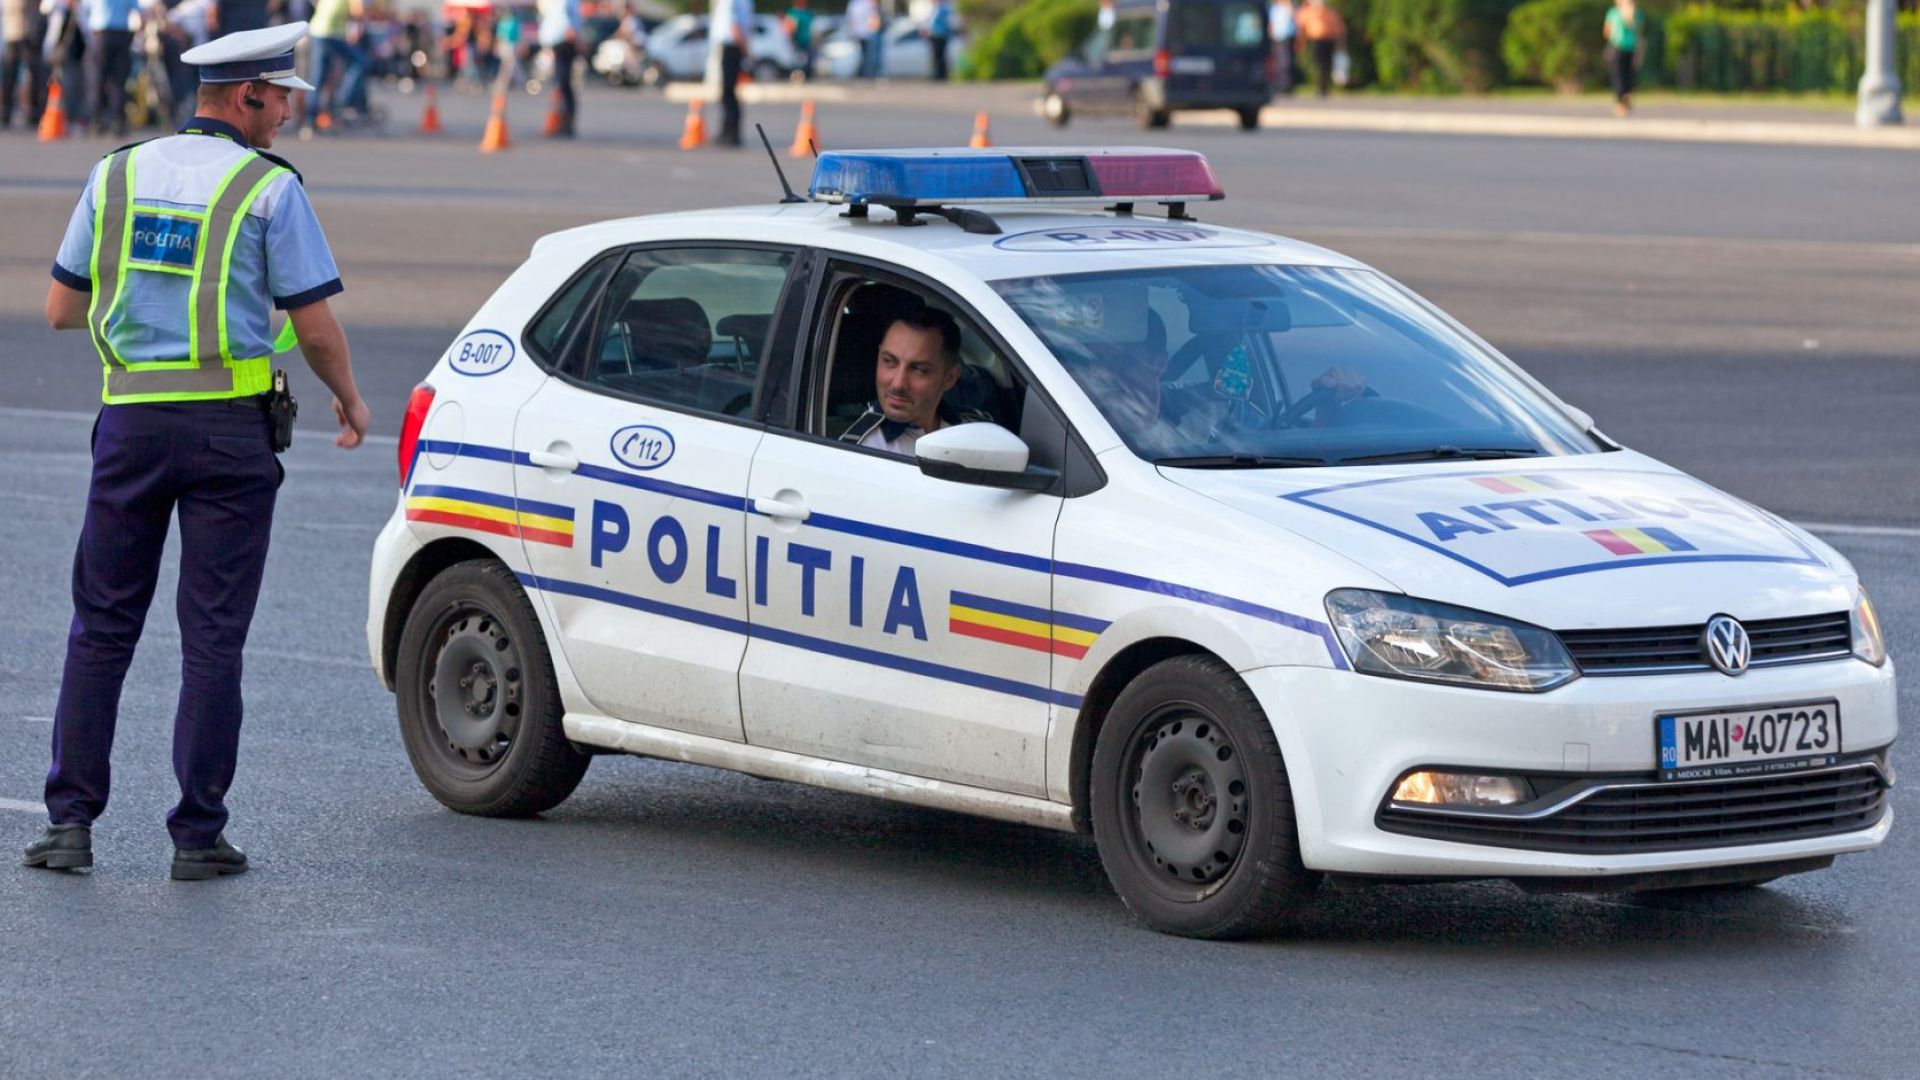 Румънски шофьор е арестуван след като качил в микробуса си